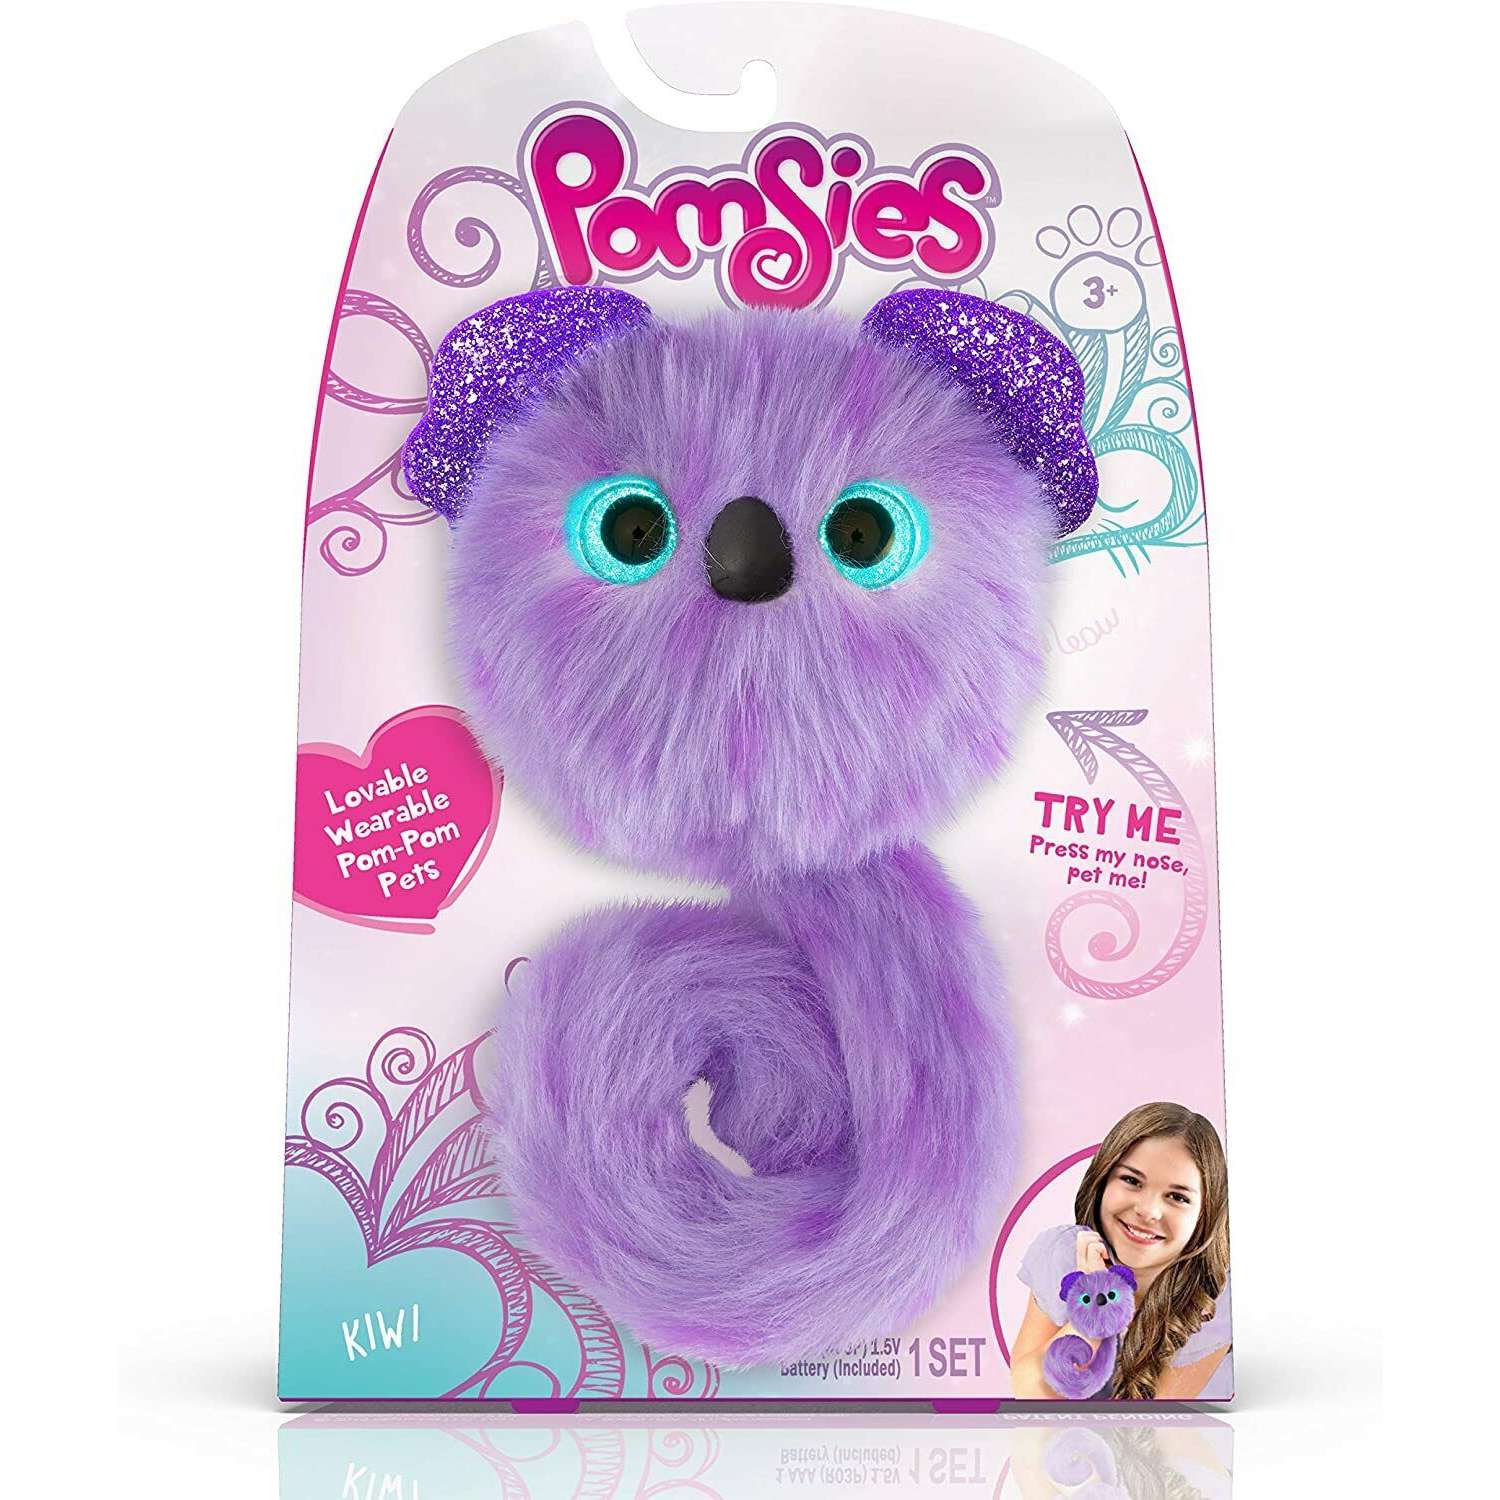 Интерактивная игрушка My Fuzzy Friends Pomsies коала Клои - фото 13